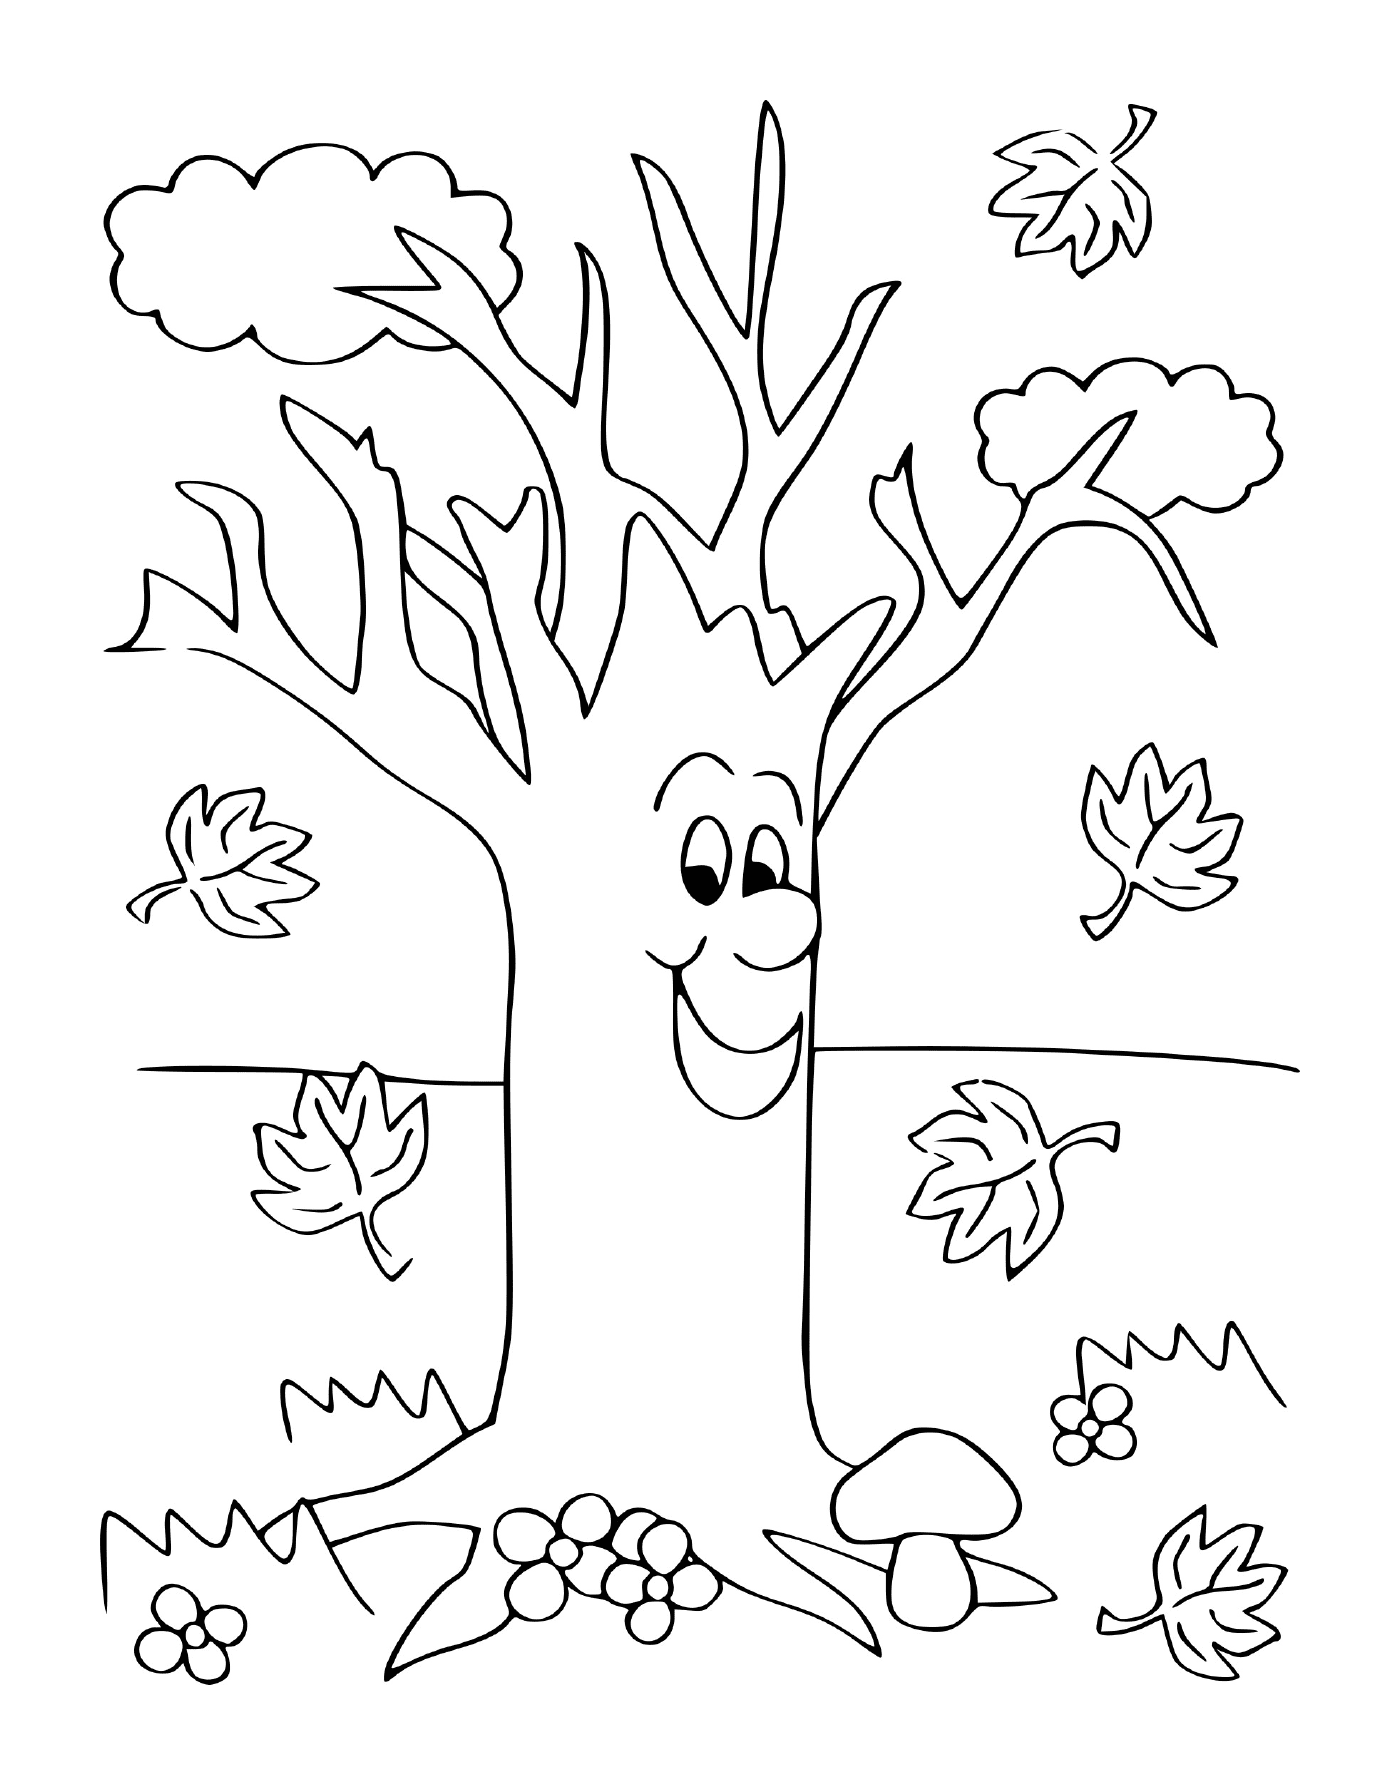  Ein Baum mit Blättern 